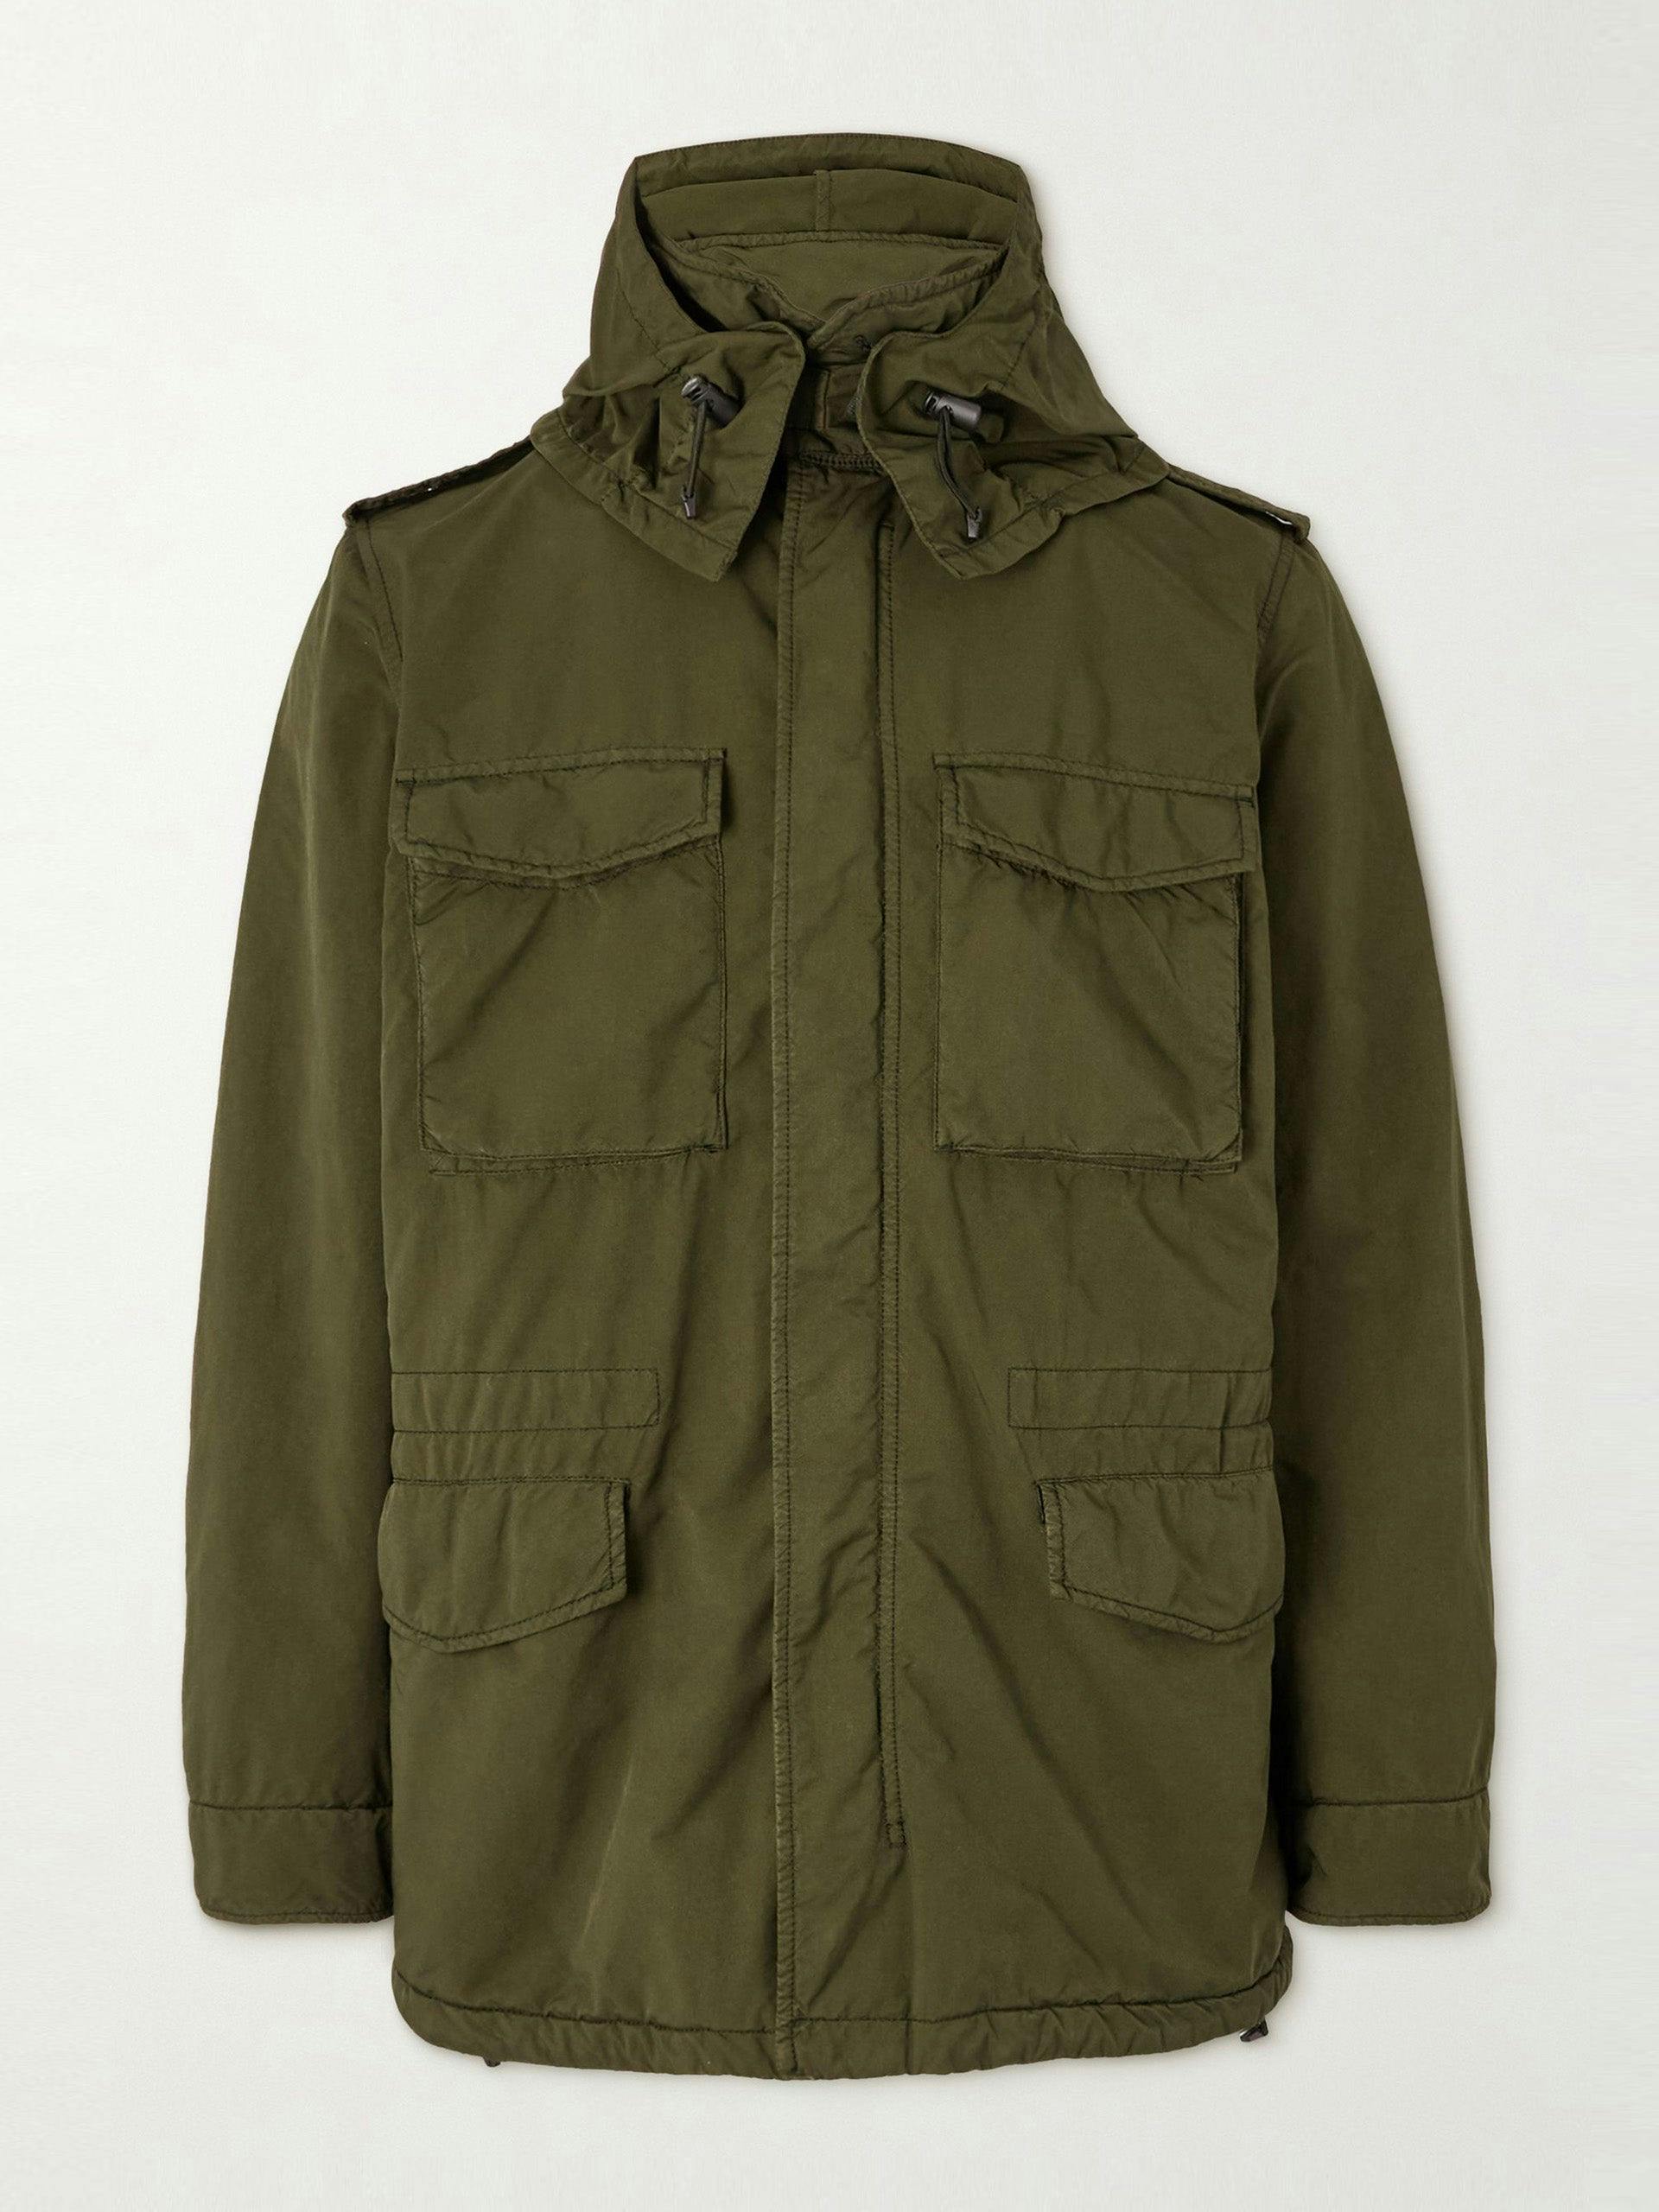 Green hooded field jacket